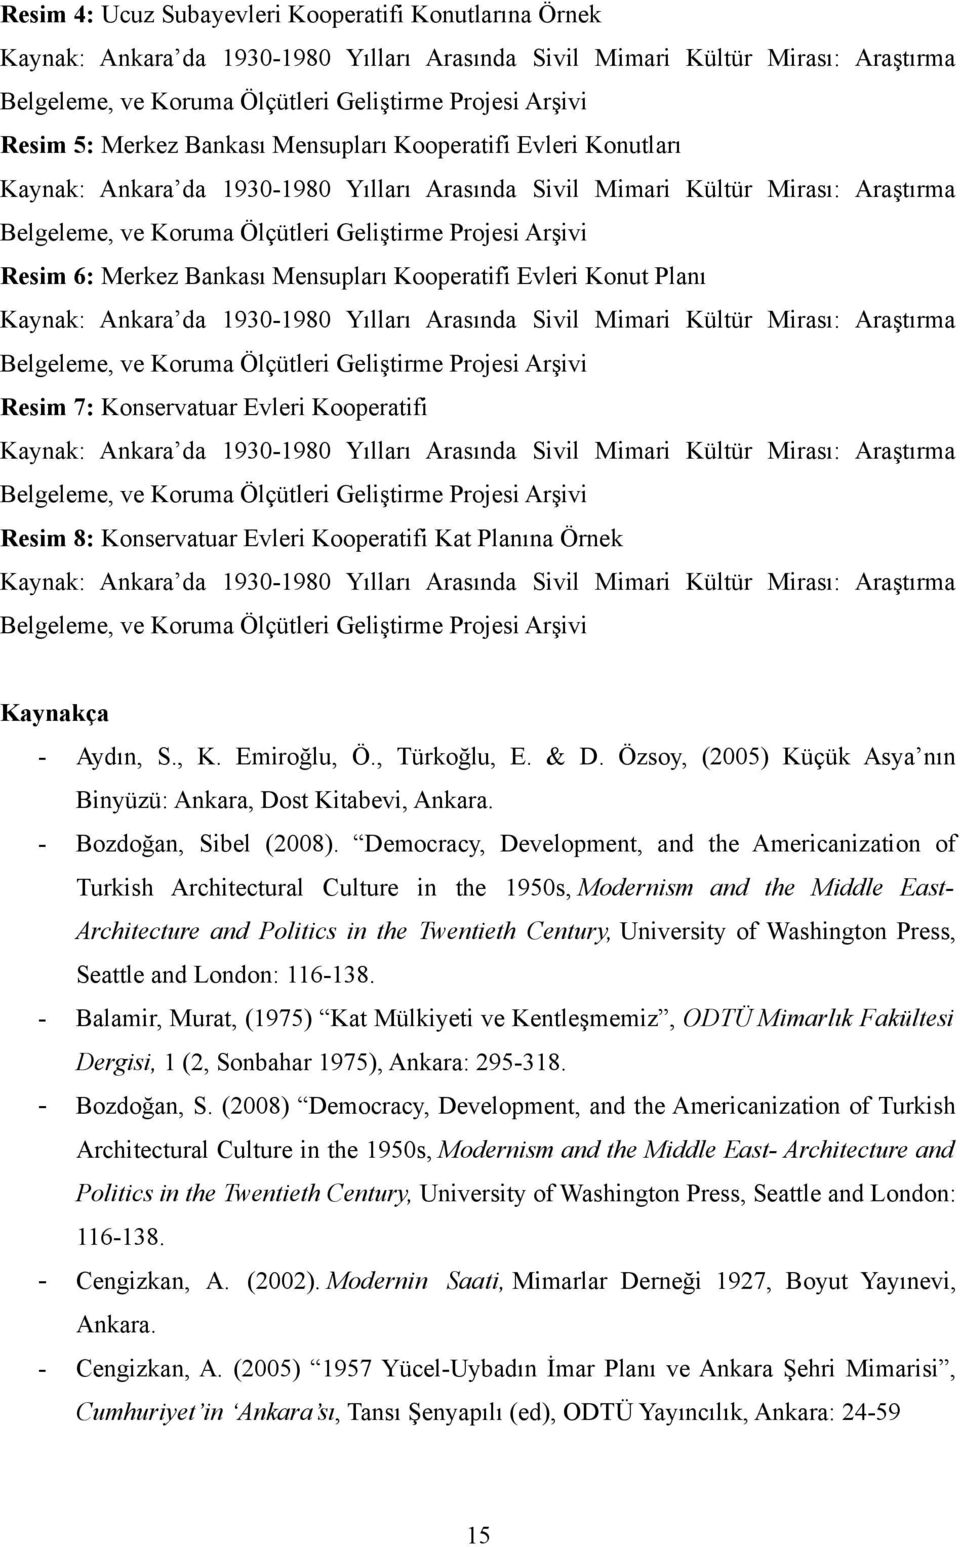 Arşivi Resim 6: Merkez Bankası Mensupları Kooperatifi Evleri Konut Planı Kaynak: Ankara da 1930-1980 Yılları Arasında Sivil Mimari Kültür Mirası: Araştırma Belgeleme, ve Koruma Ölçütleri Geliştirme